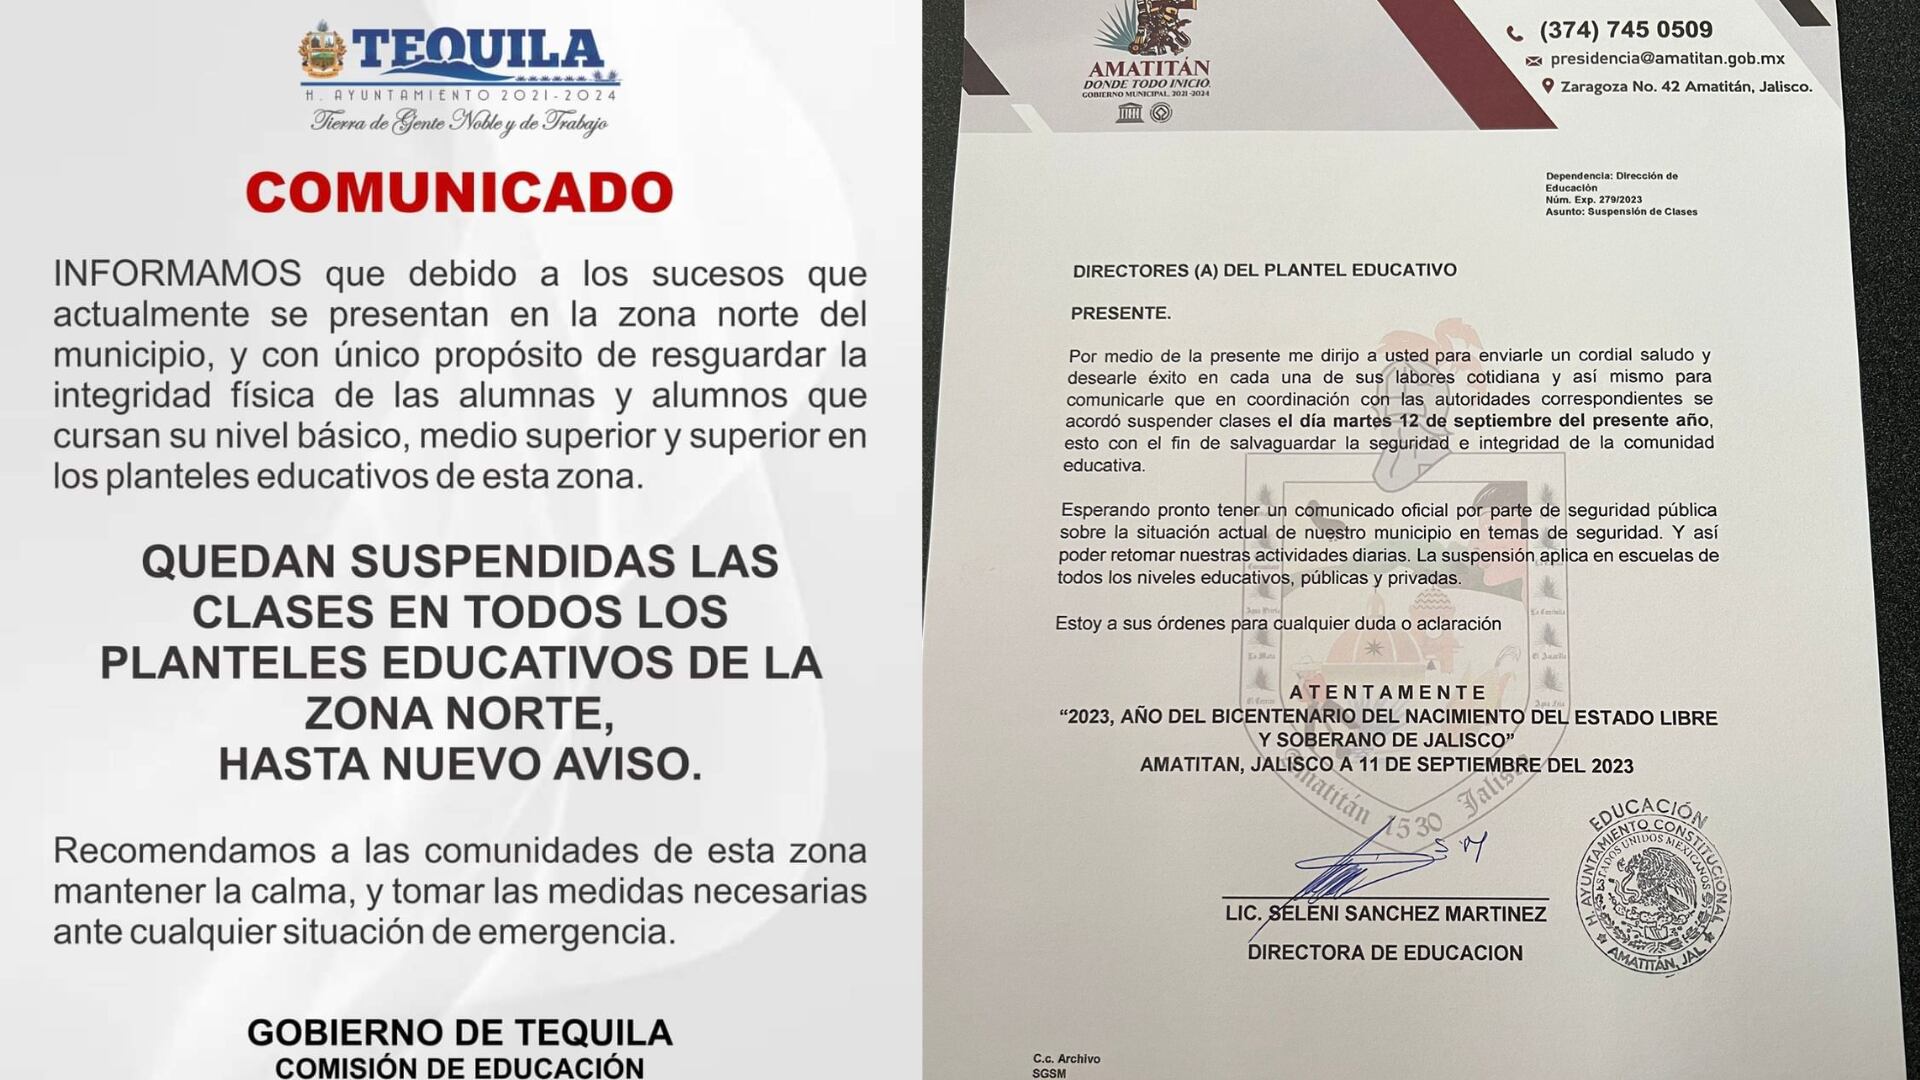 En Tequila y Amatitán se suspendieron las clases por los operativos militares (Foto: Gobierno de Tequila / Twitter@escamillajluis)